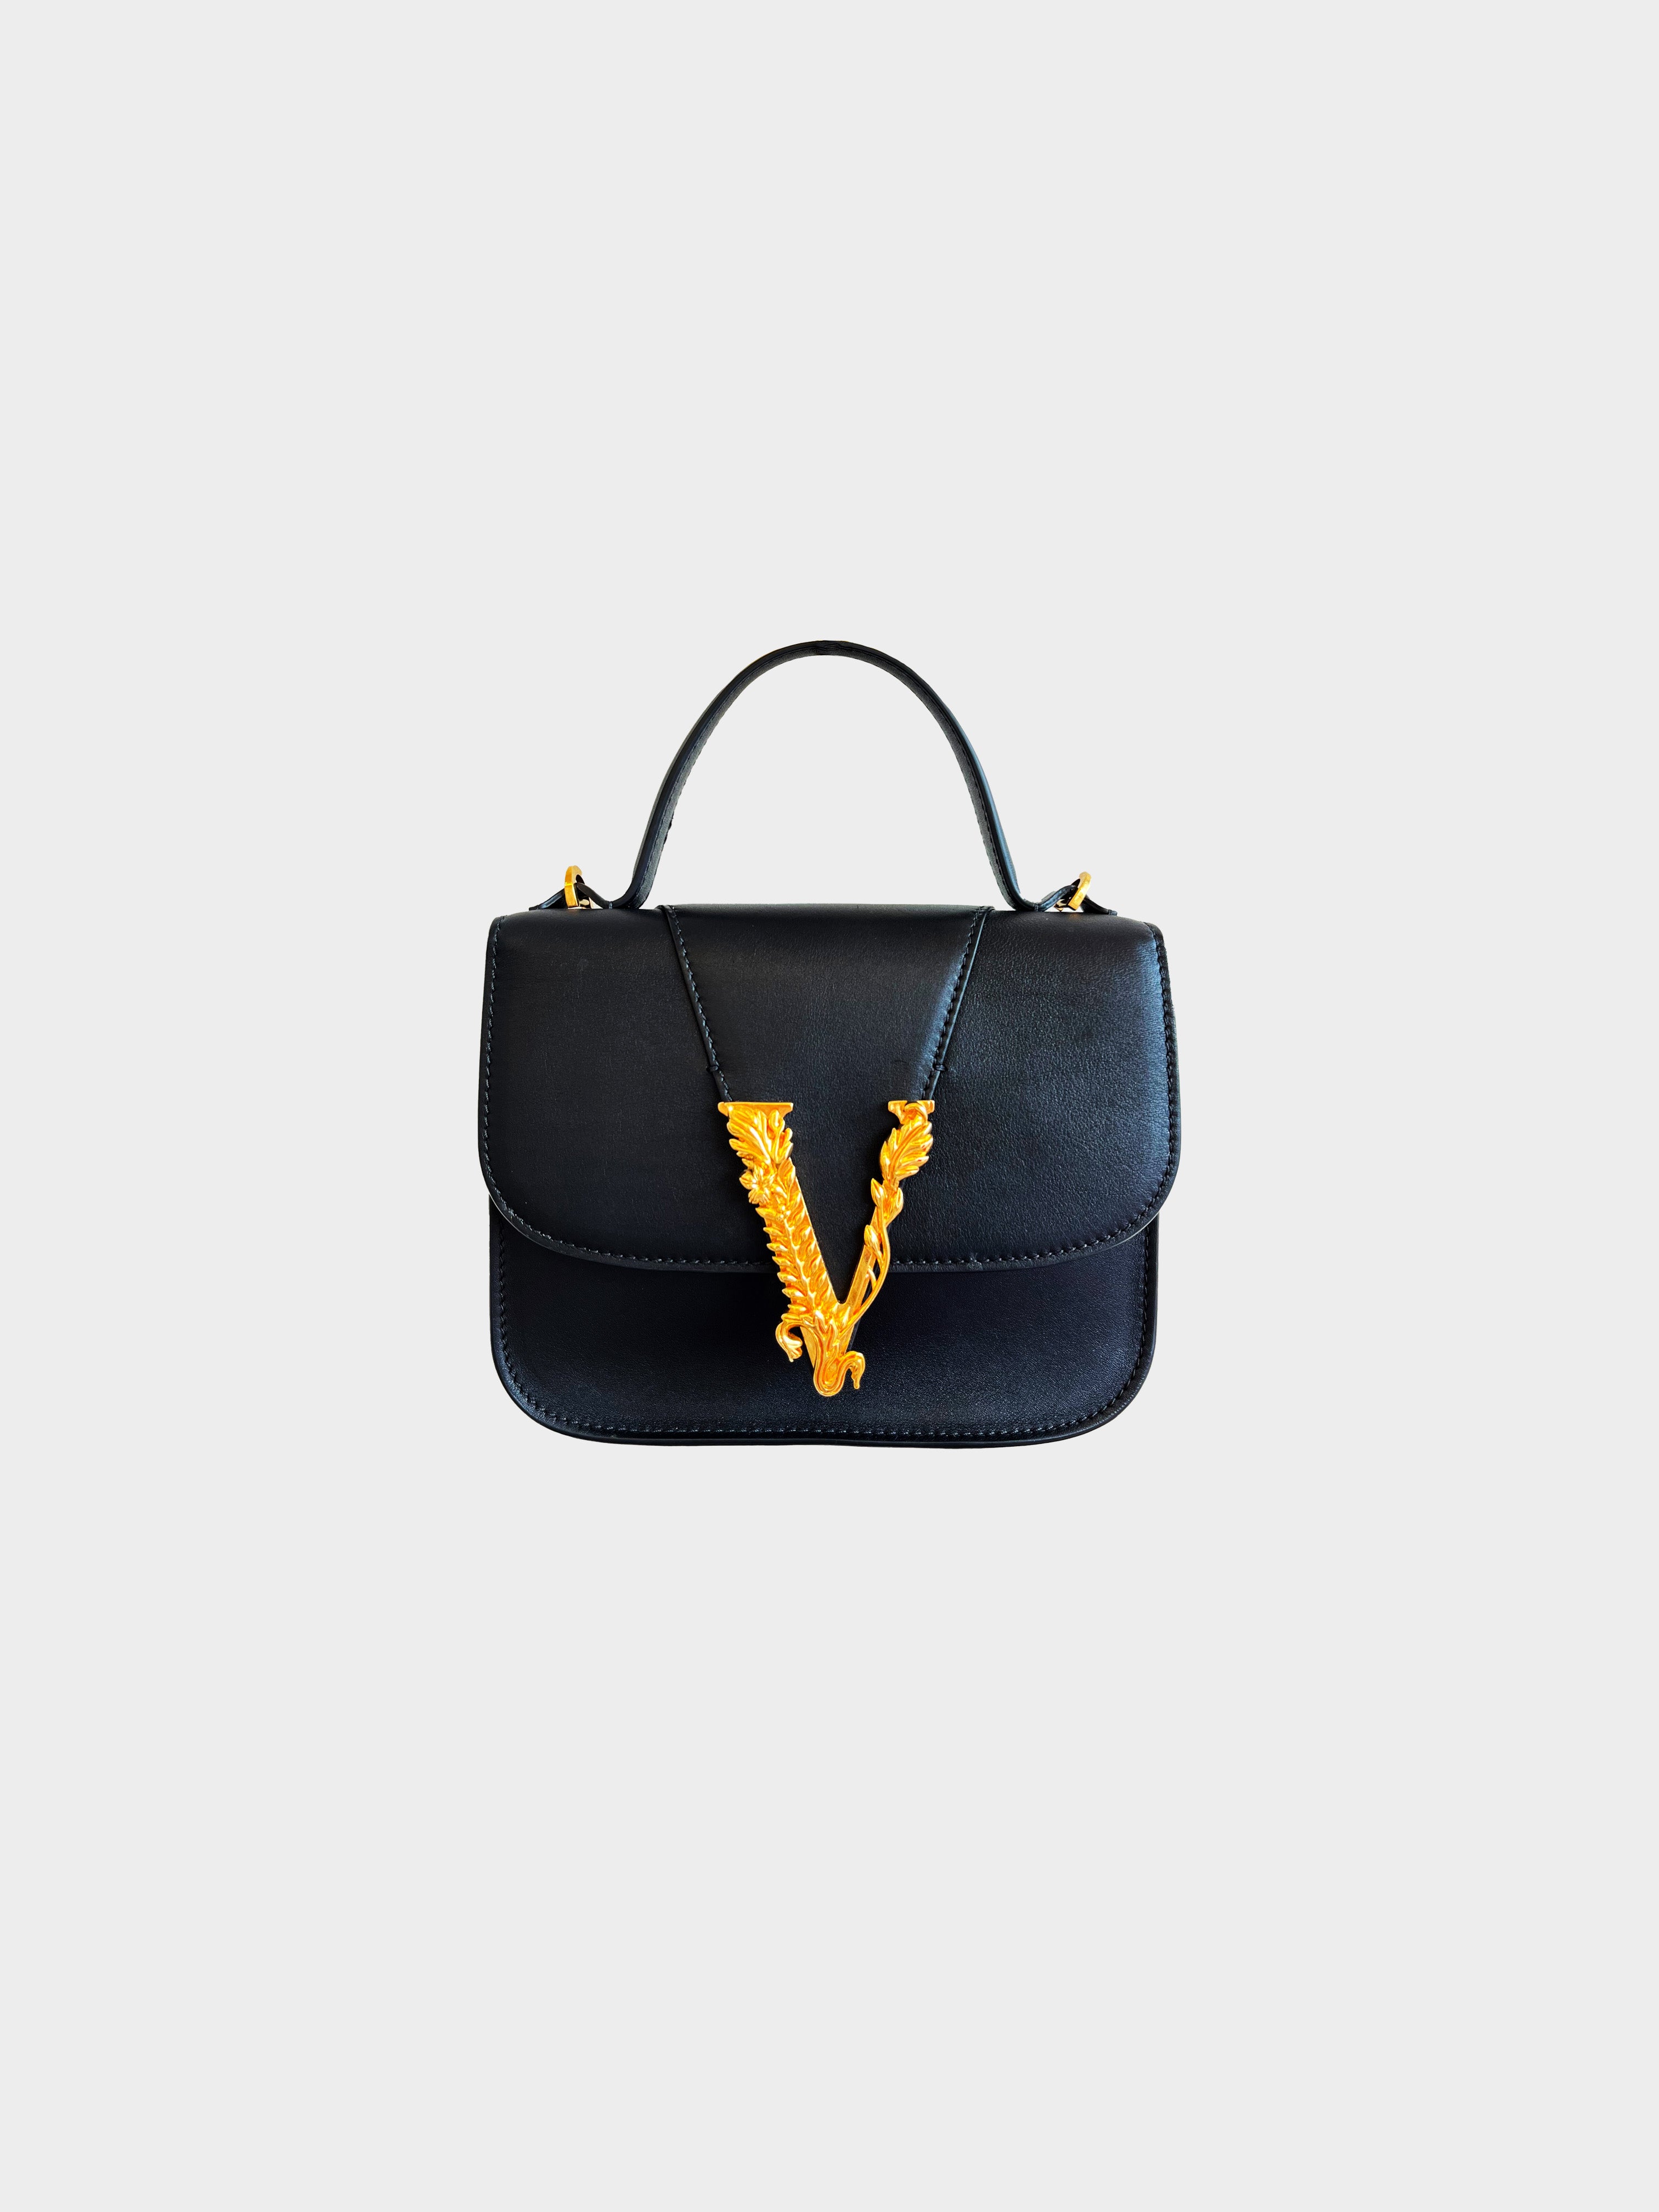 Versace Blue Mini Virtus Bag